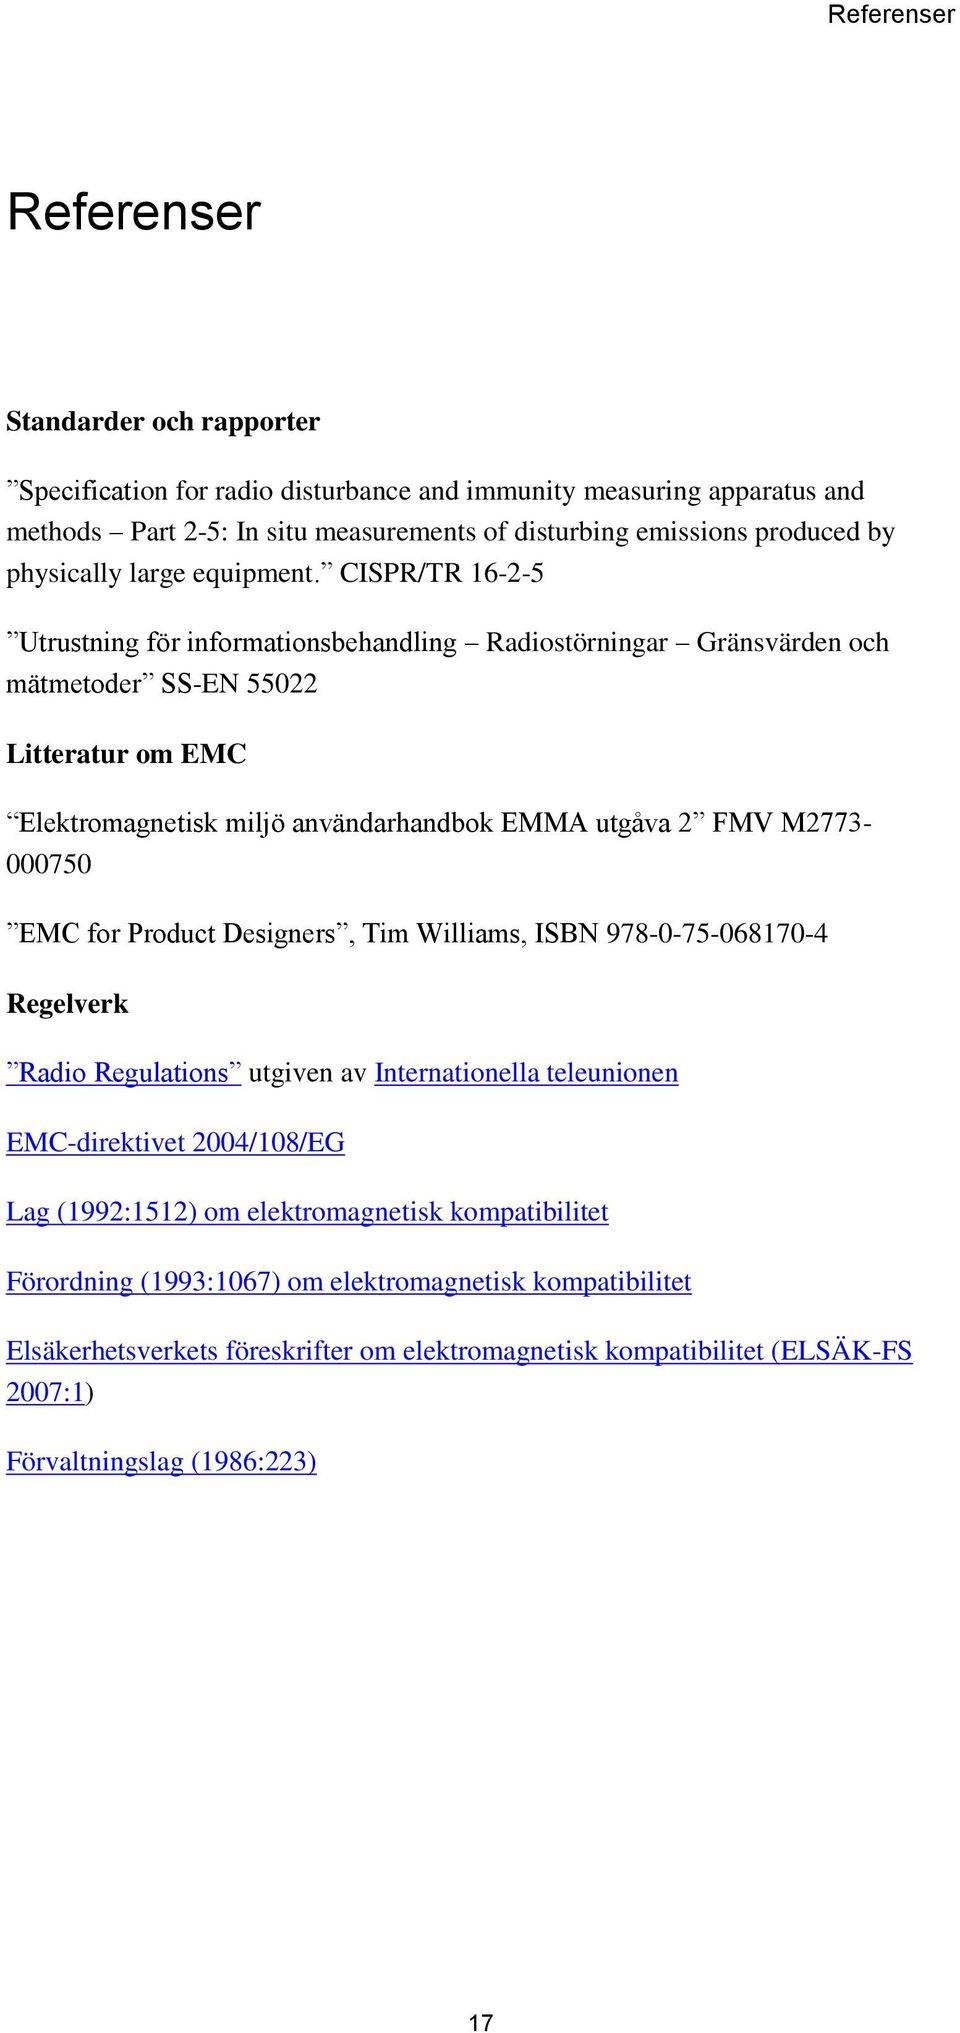 CISPR/TR 16-2-5 Utrustning för informationsbehandling Radiostörningar Gränsvärden och mätmetoder SS-EN 55022 Litteratur om EMC Elektromagnetisk miljö användarhandbok EMMA utgåva 2 FMV M2773-000750